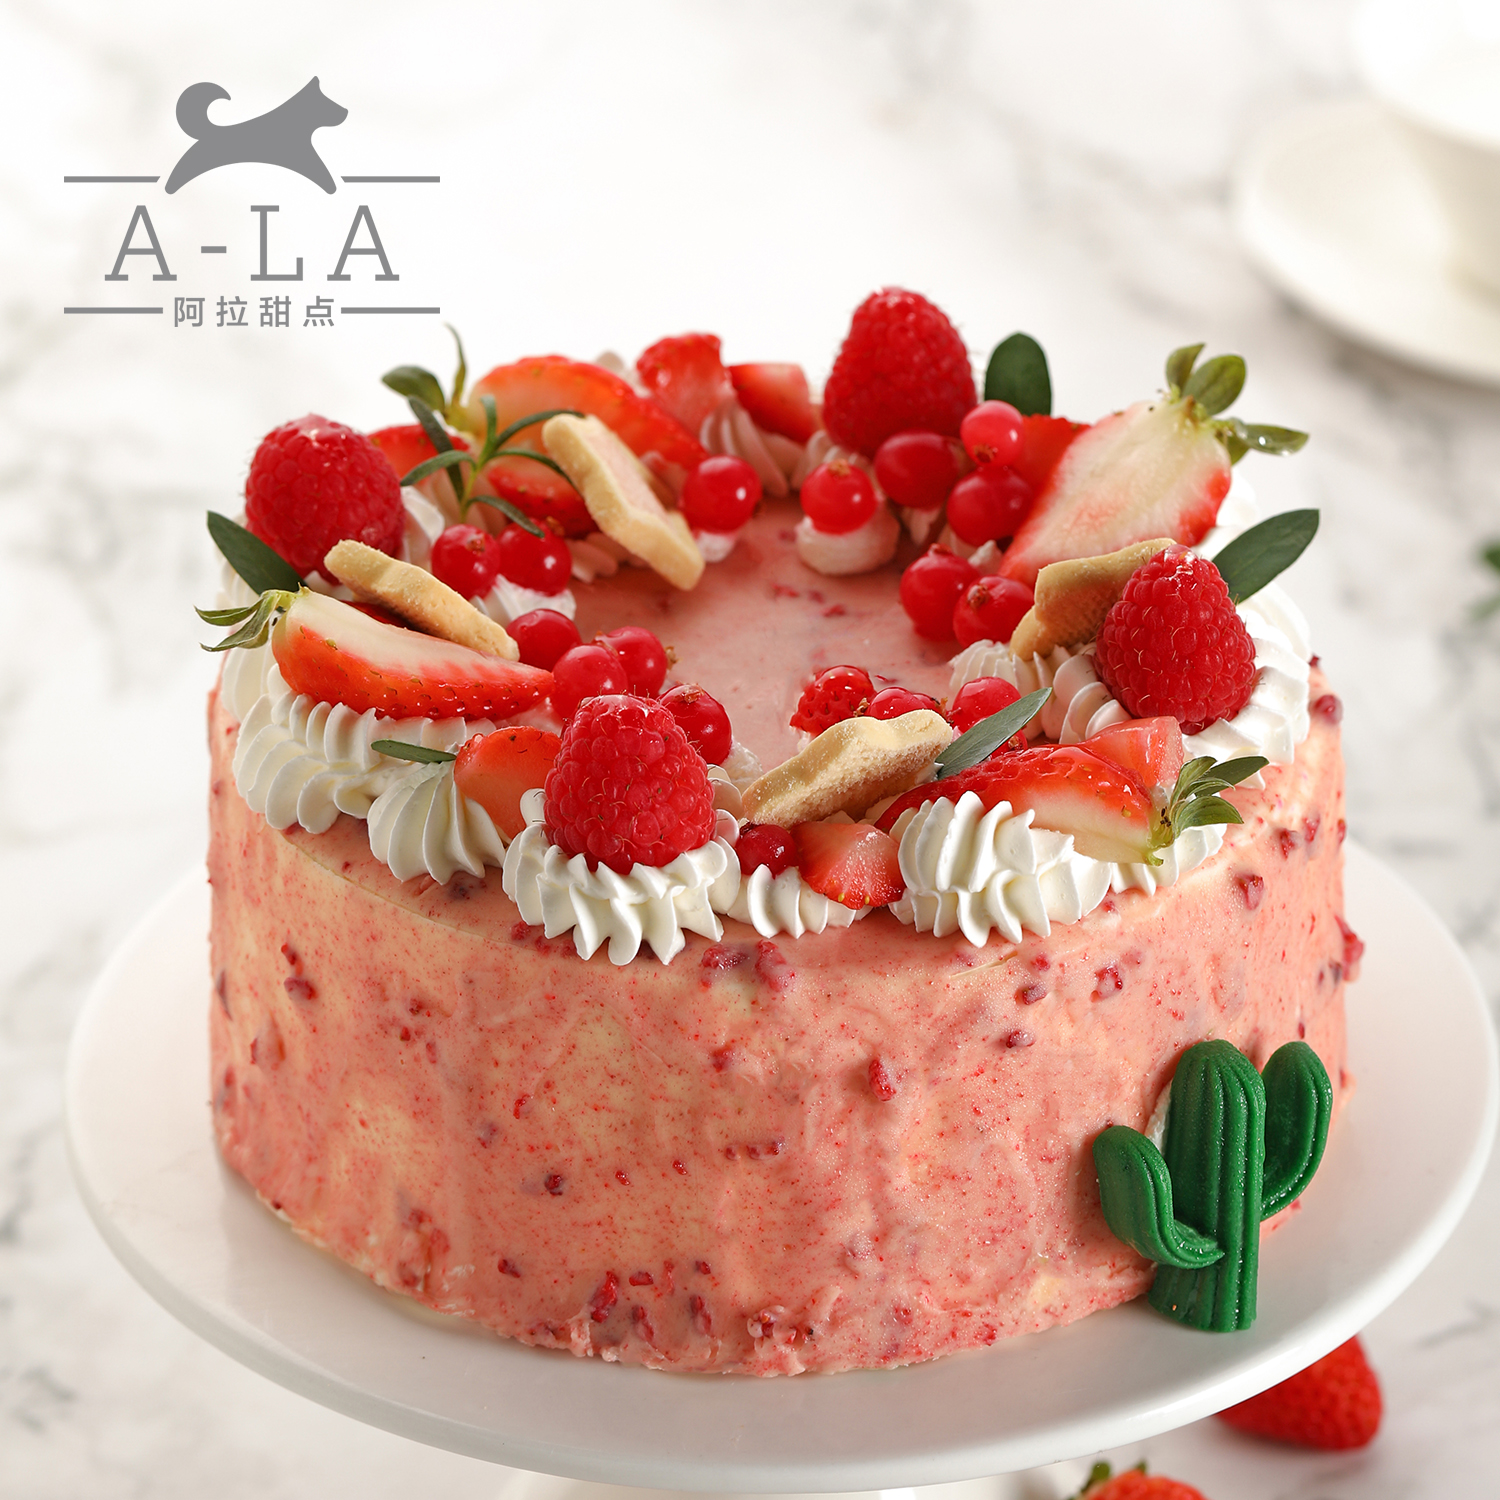 阿拉甜点草莓低糖淋面低糖纯动物奶油生日蛋糕成都绵阳同城配送